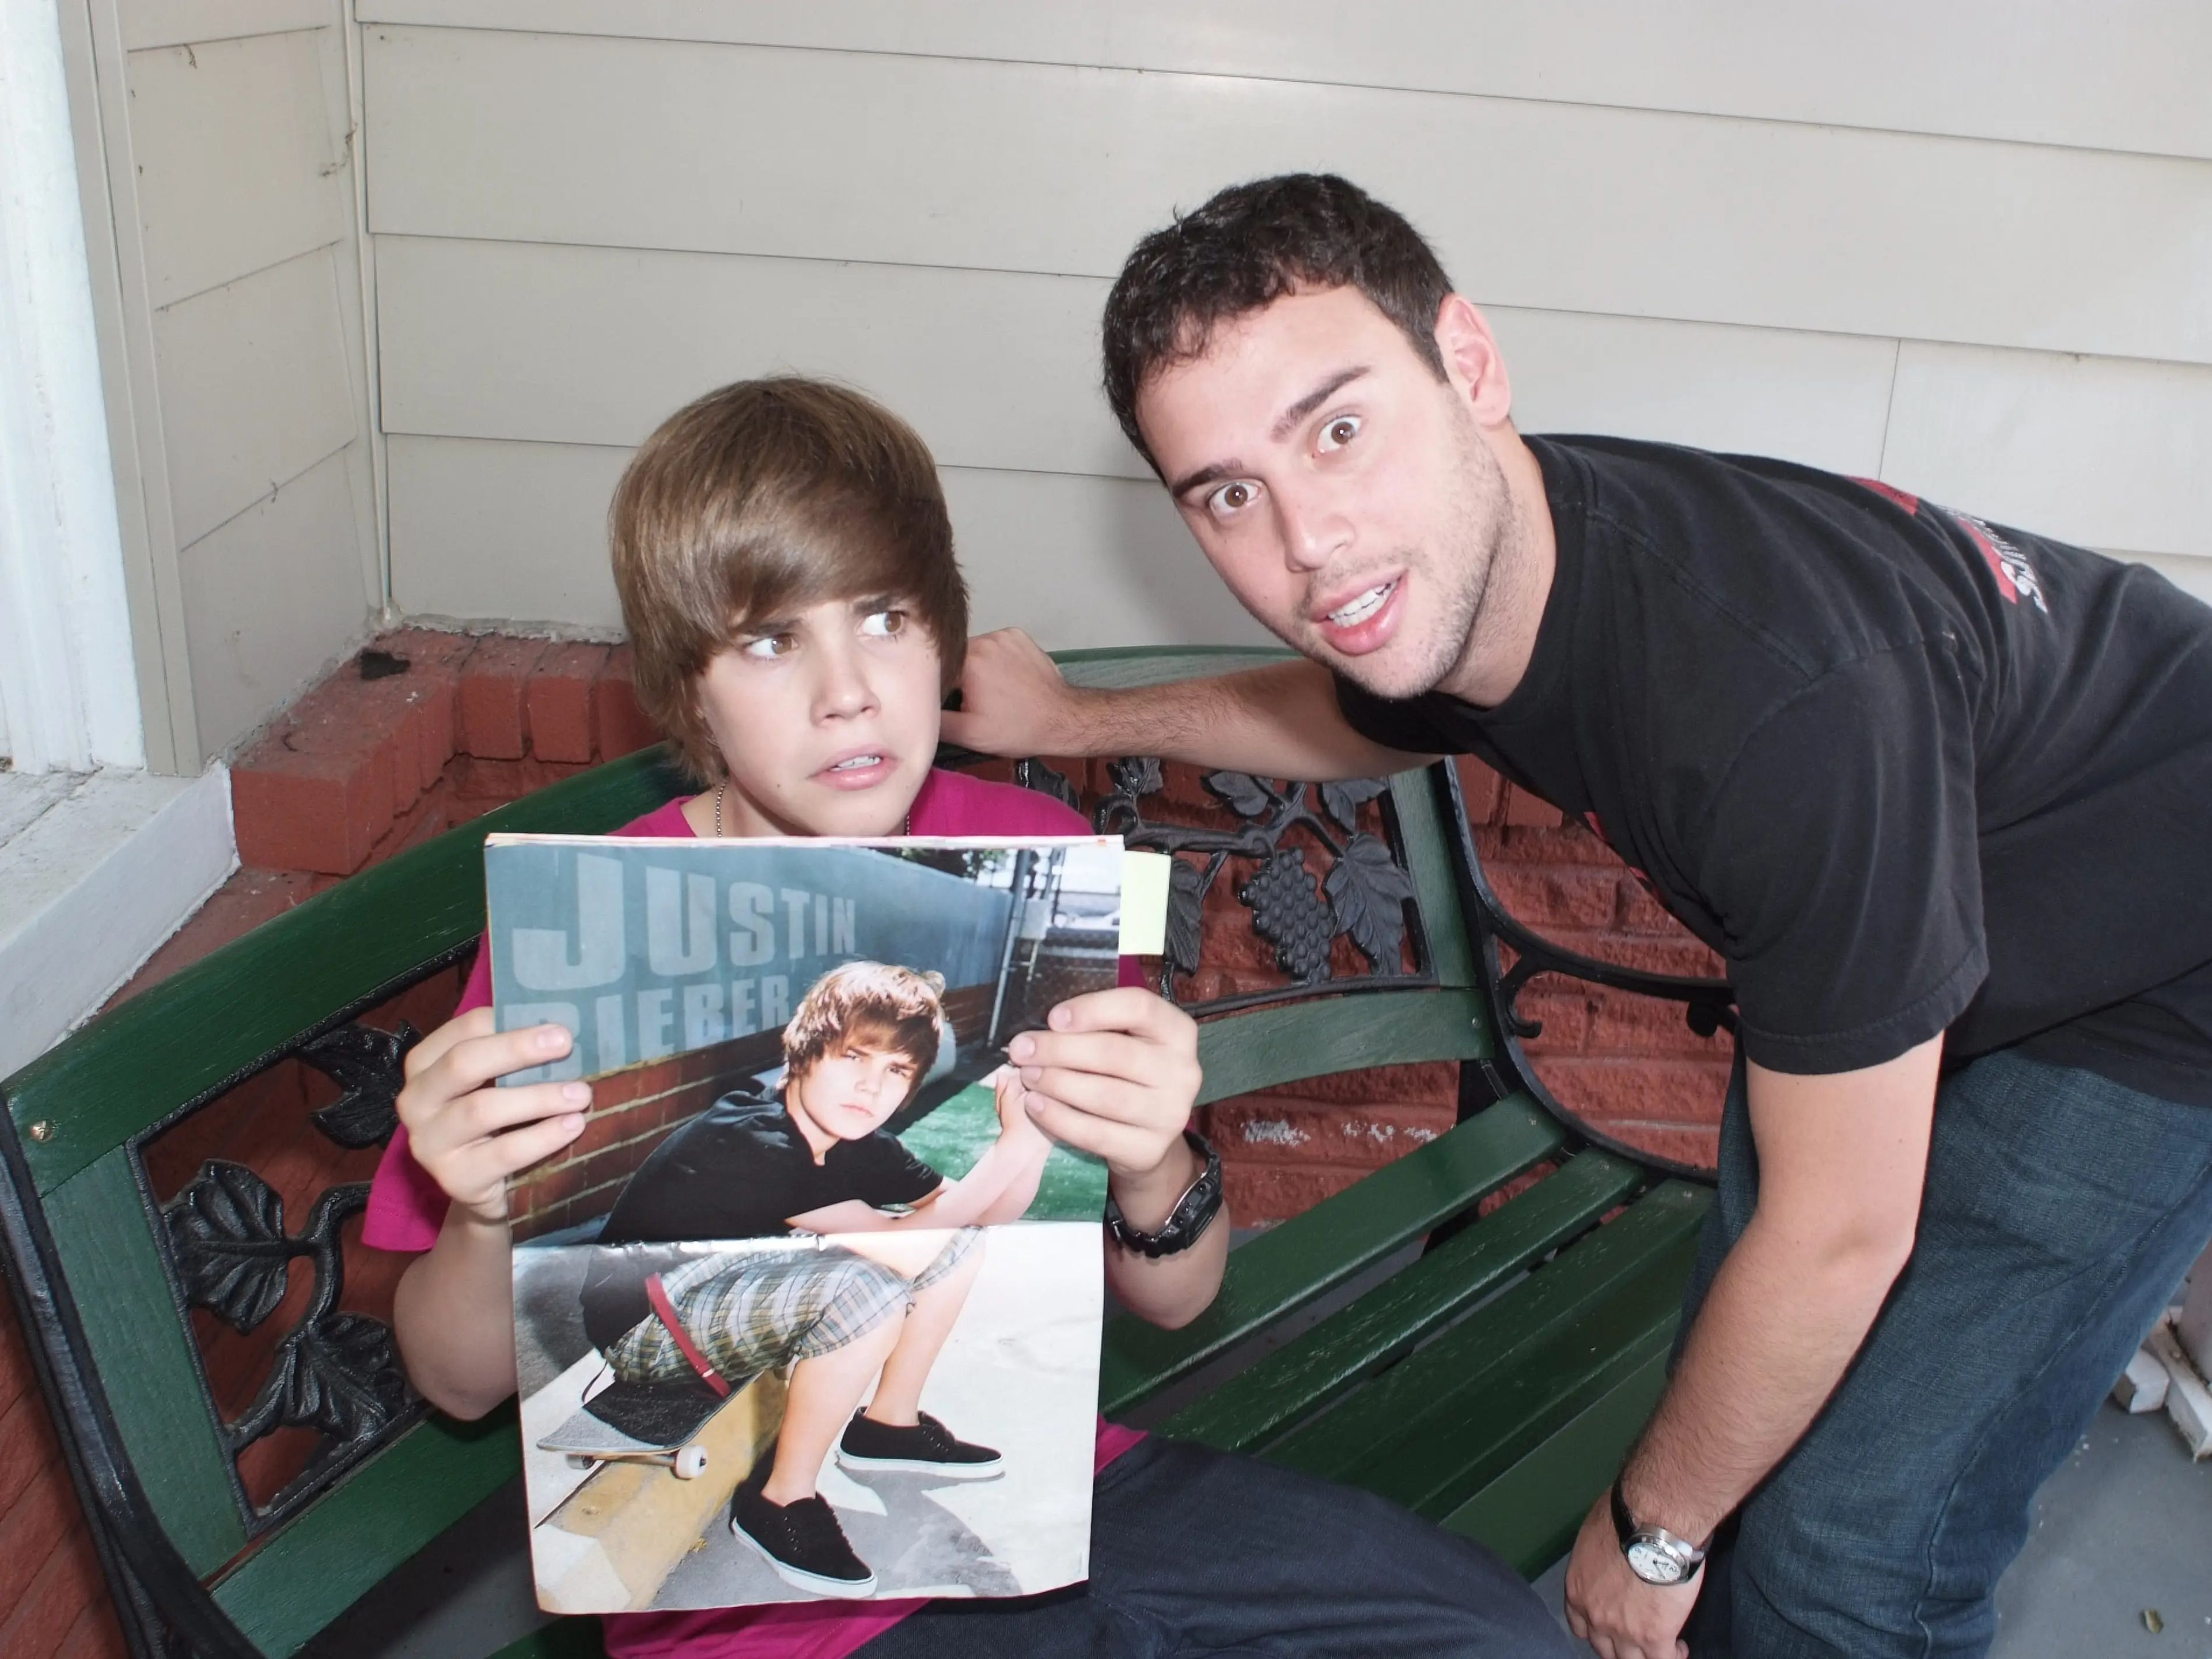 Braun es conocido por haber descubierto a Justin Bieber cuando este tenía 12 años.